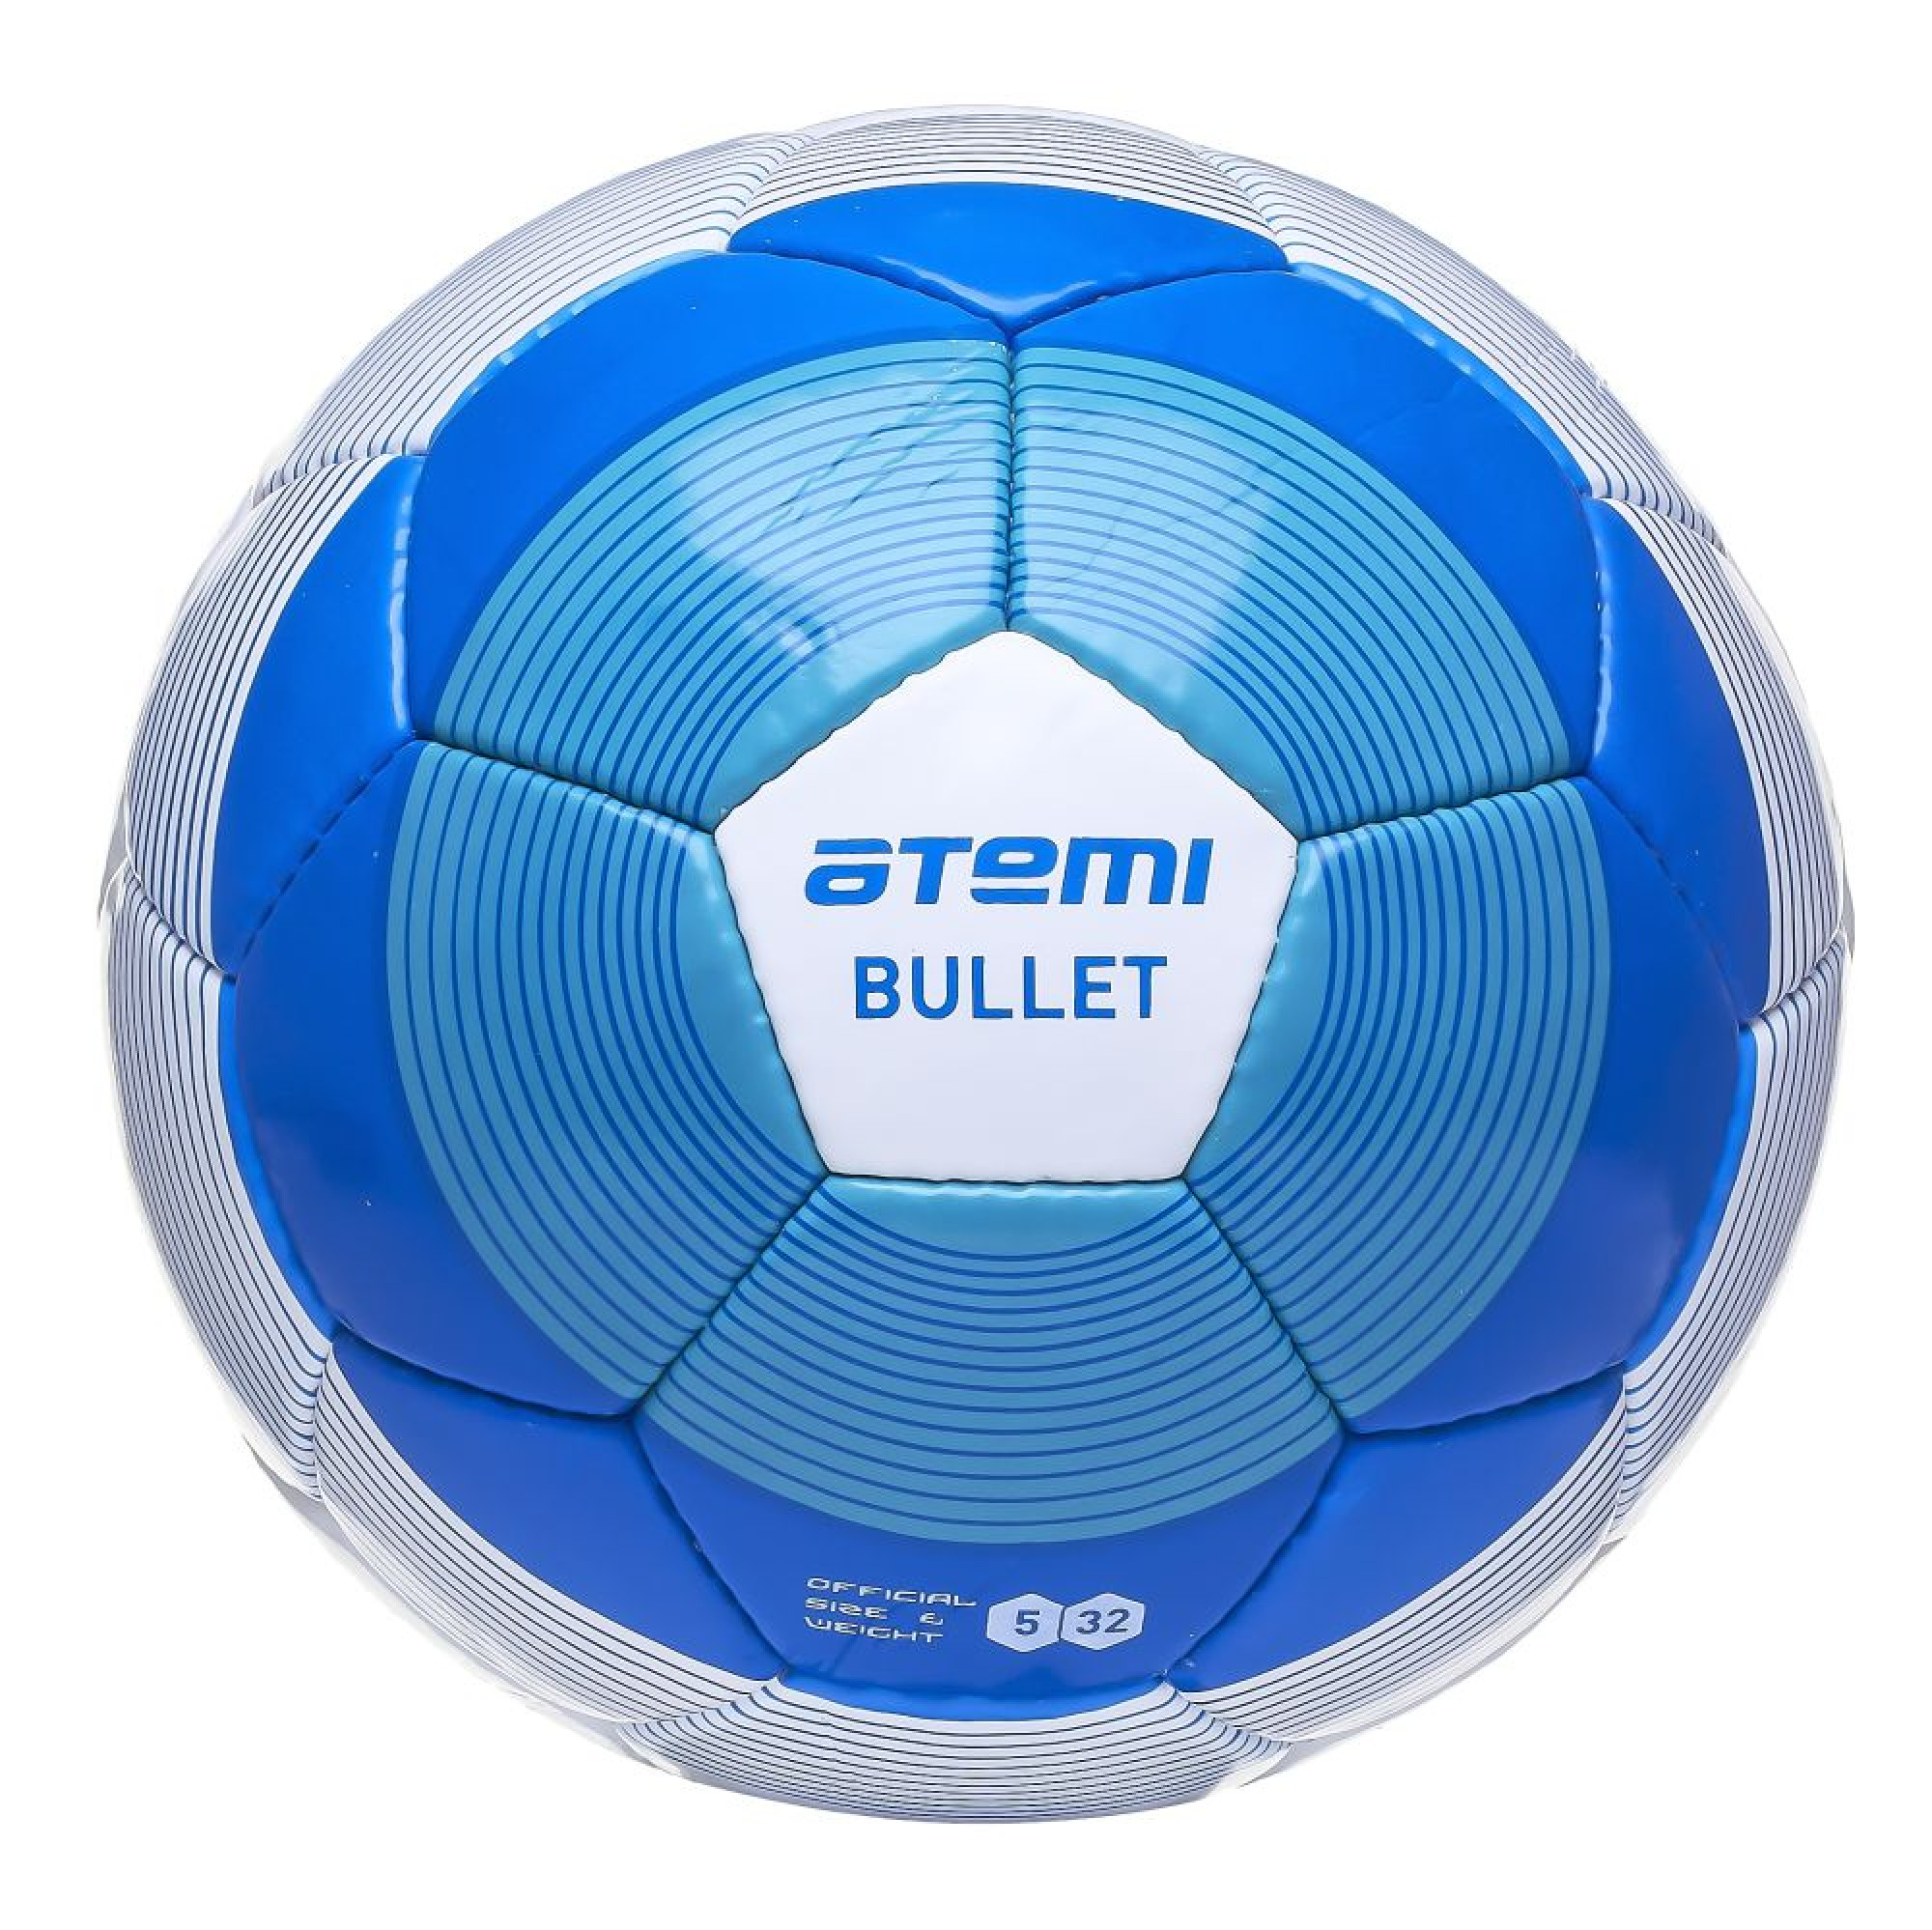 Мяч футбольный  ATEMI BULLET, PU, син/бел, р.5